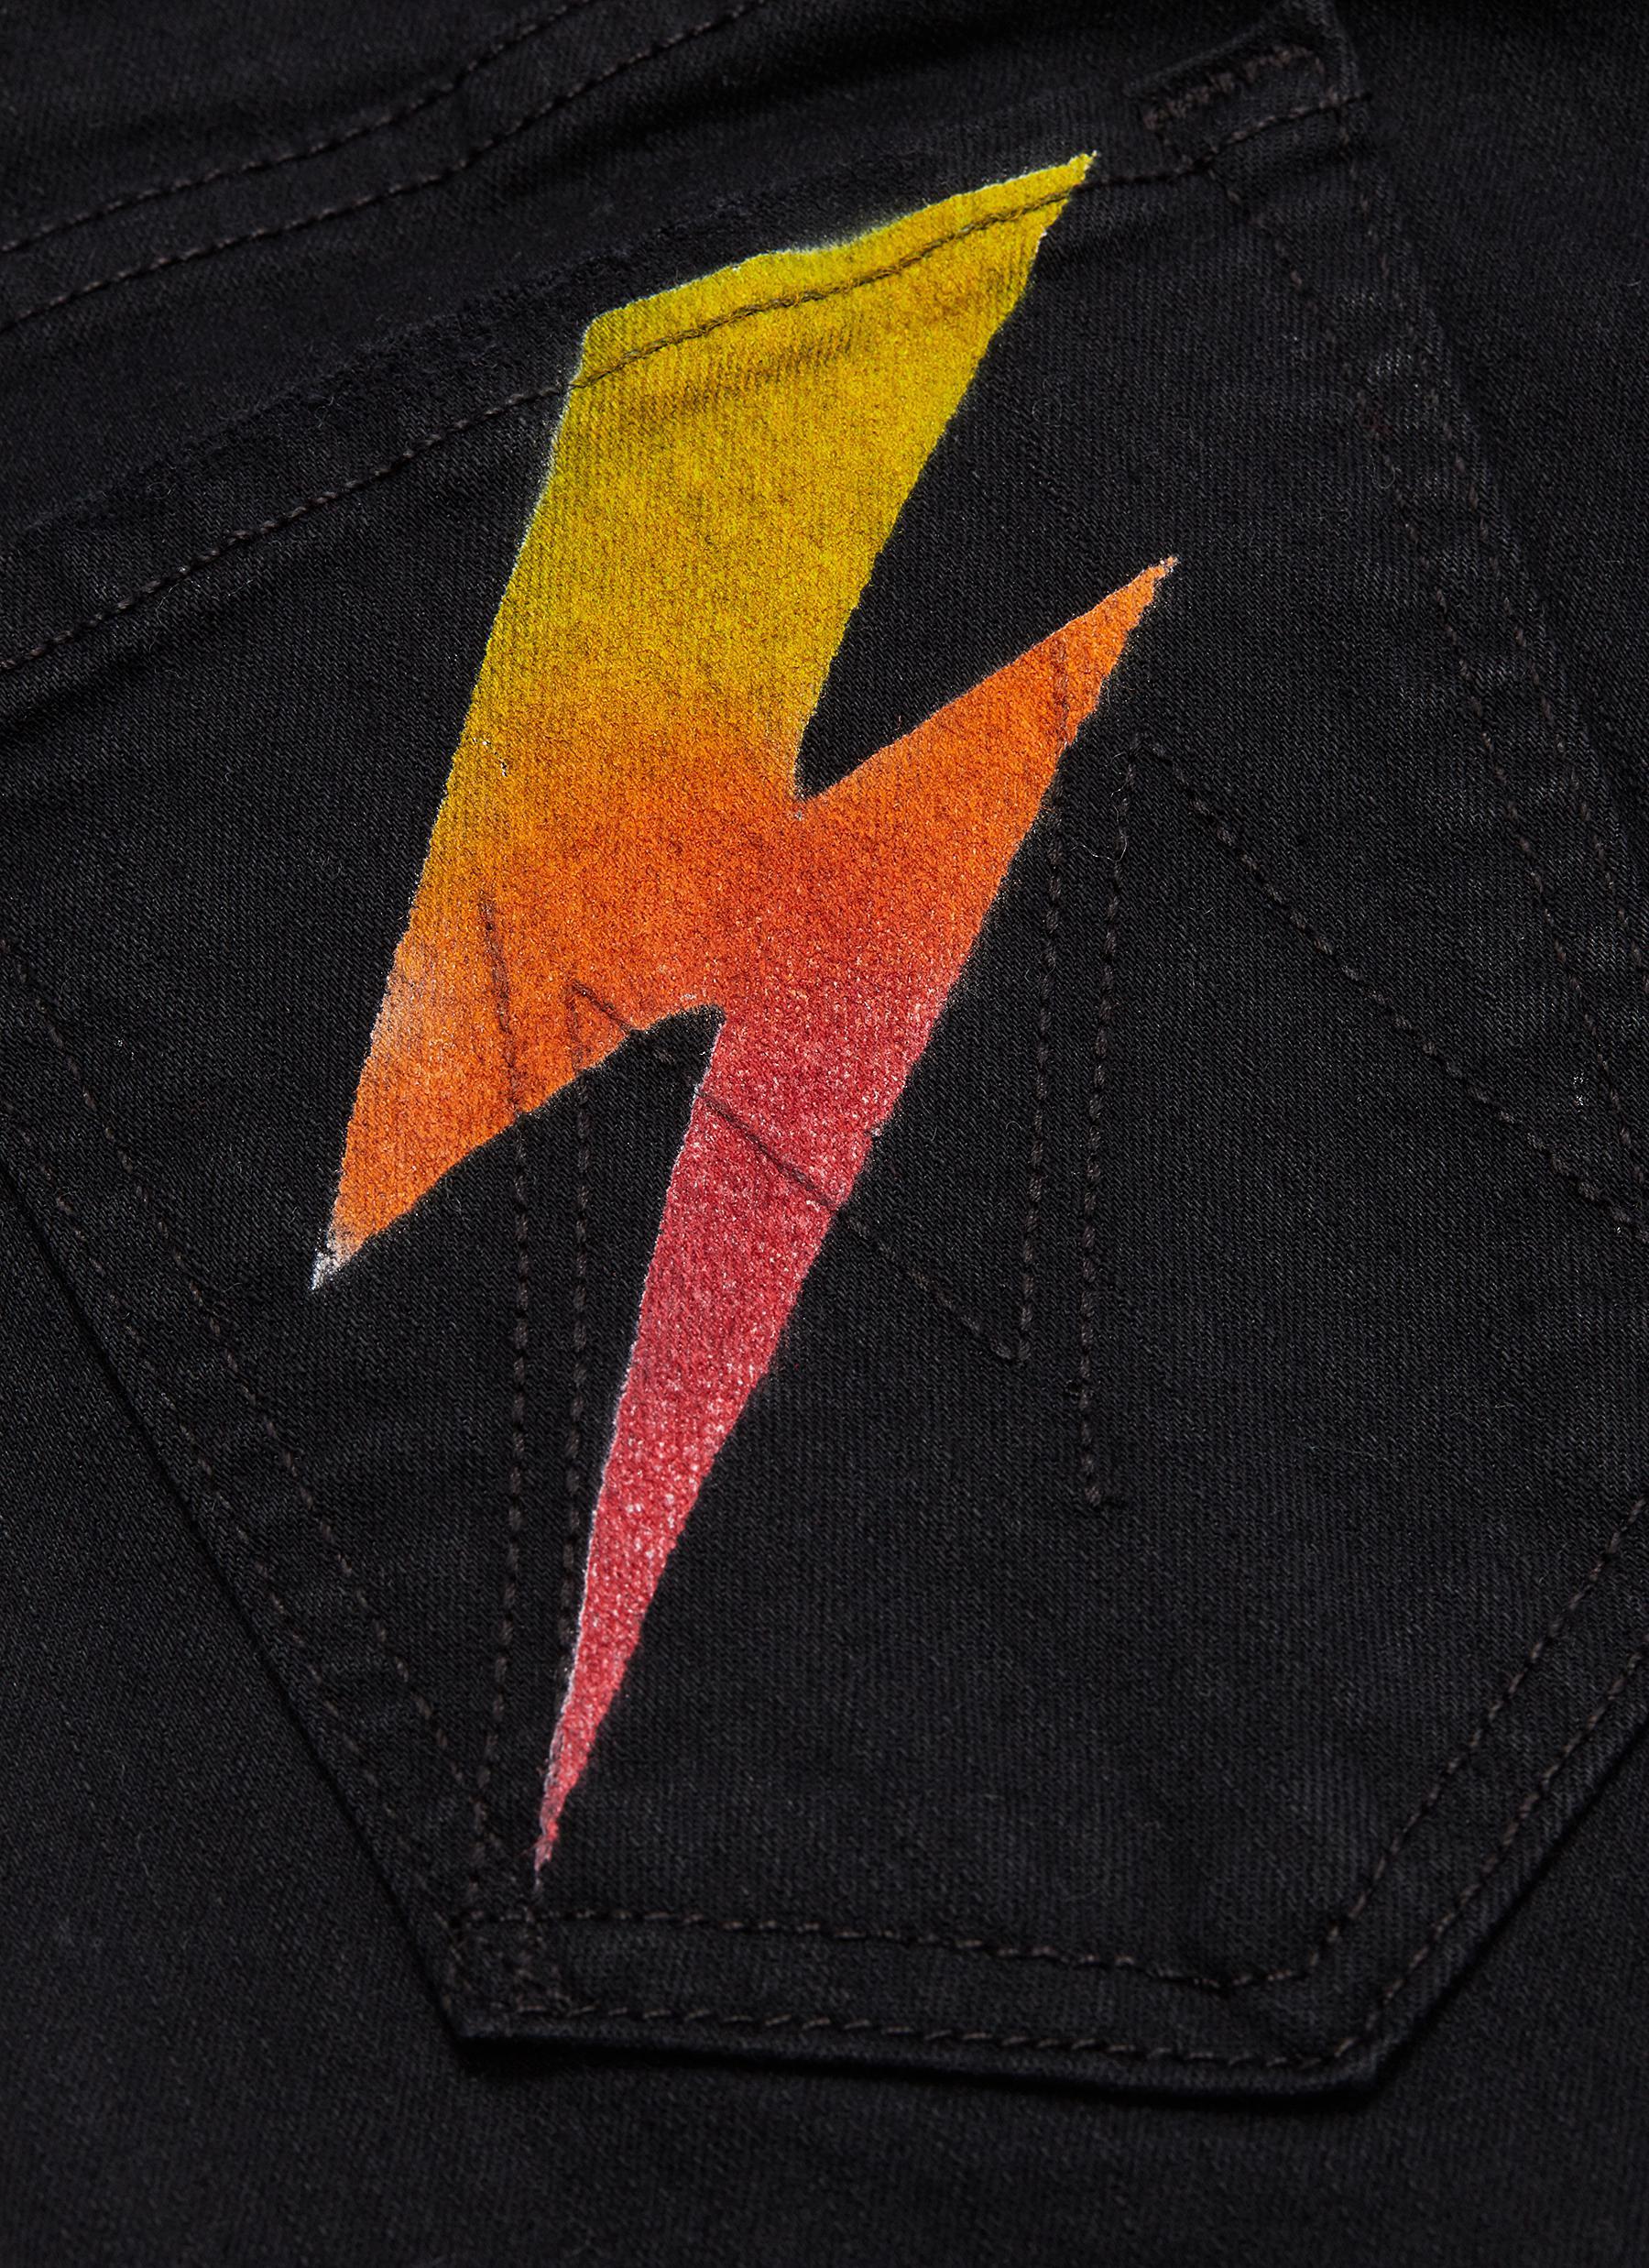 mother lightning bolt jeans